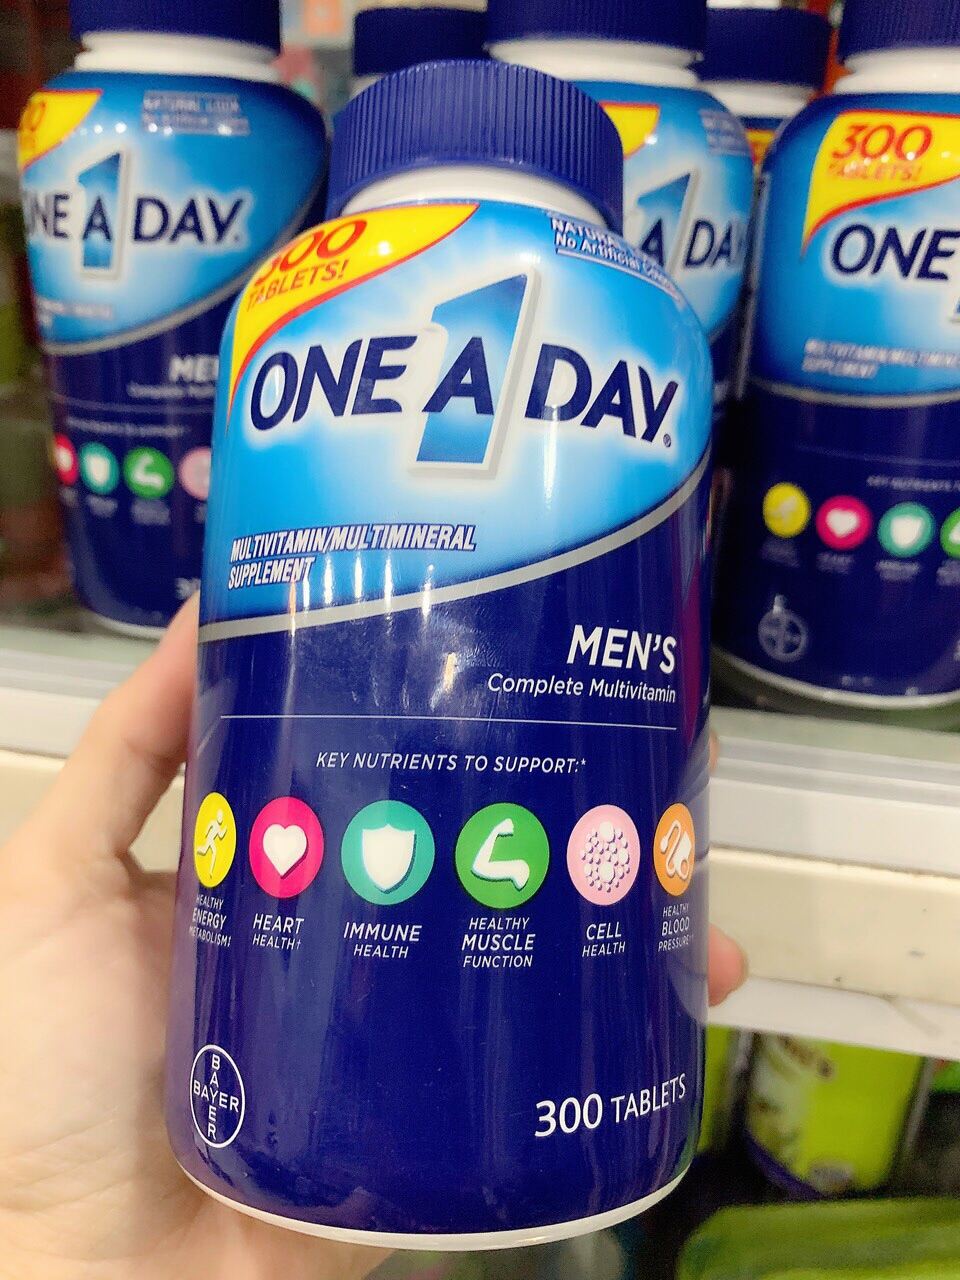 One A Day Men s là sản phẩm bổ sung tổng hợp các vitamin khoáng chất cần thumbnail